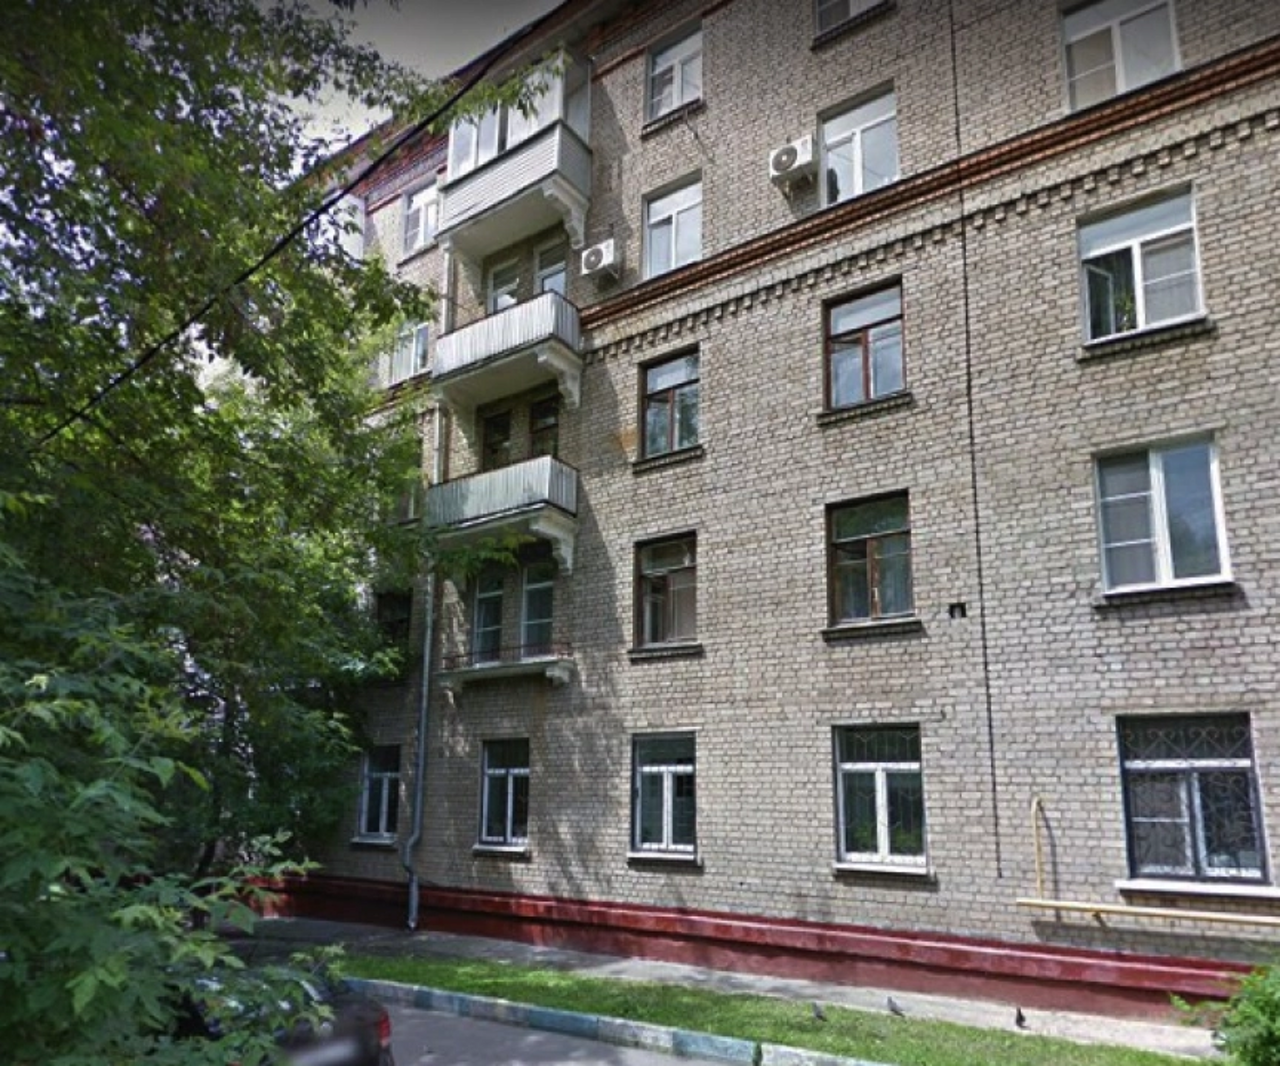 Продам квартиру в Москве по адресу Каширское шоссе, 56к2, площадь 172 квм Недвижимость Москва (Россия) м